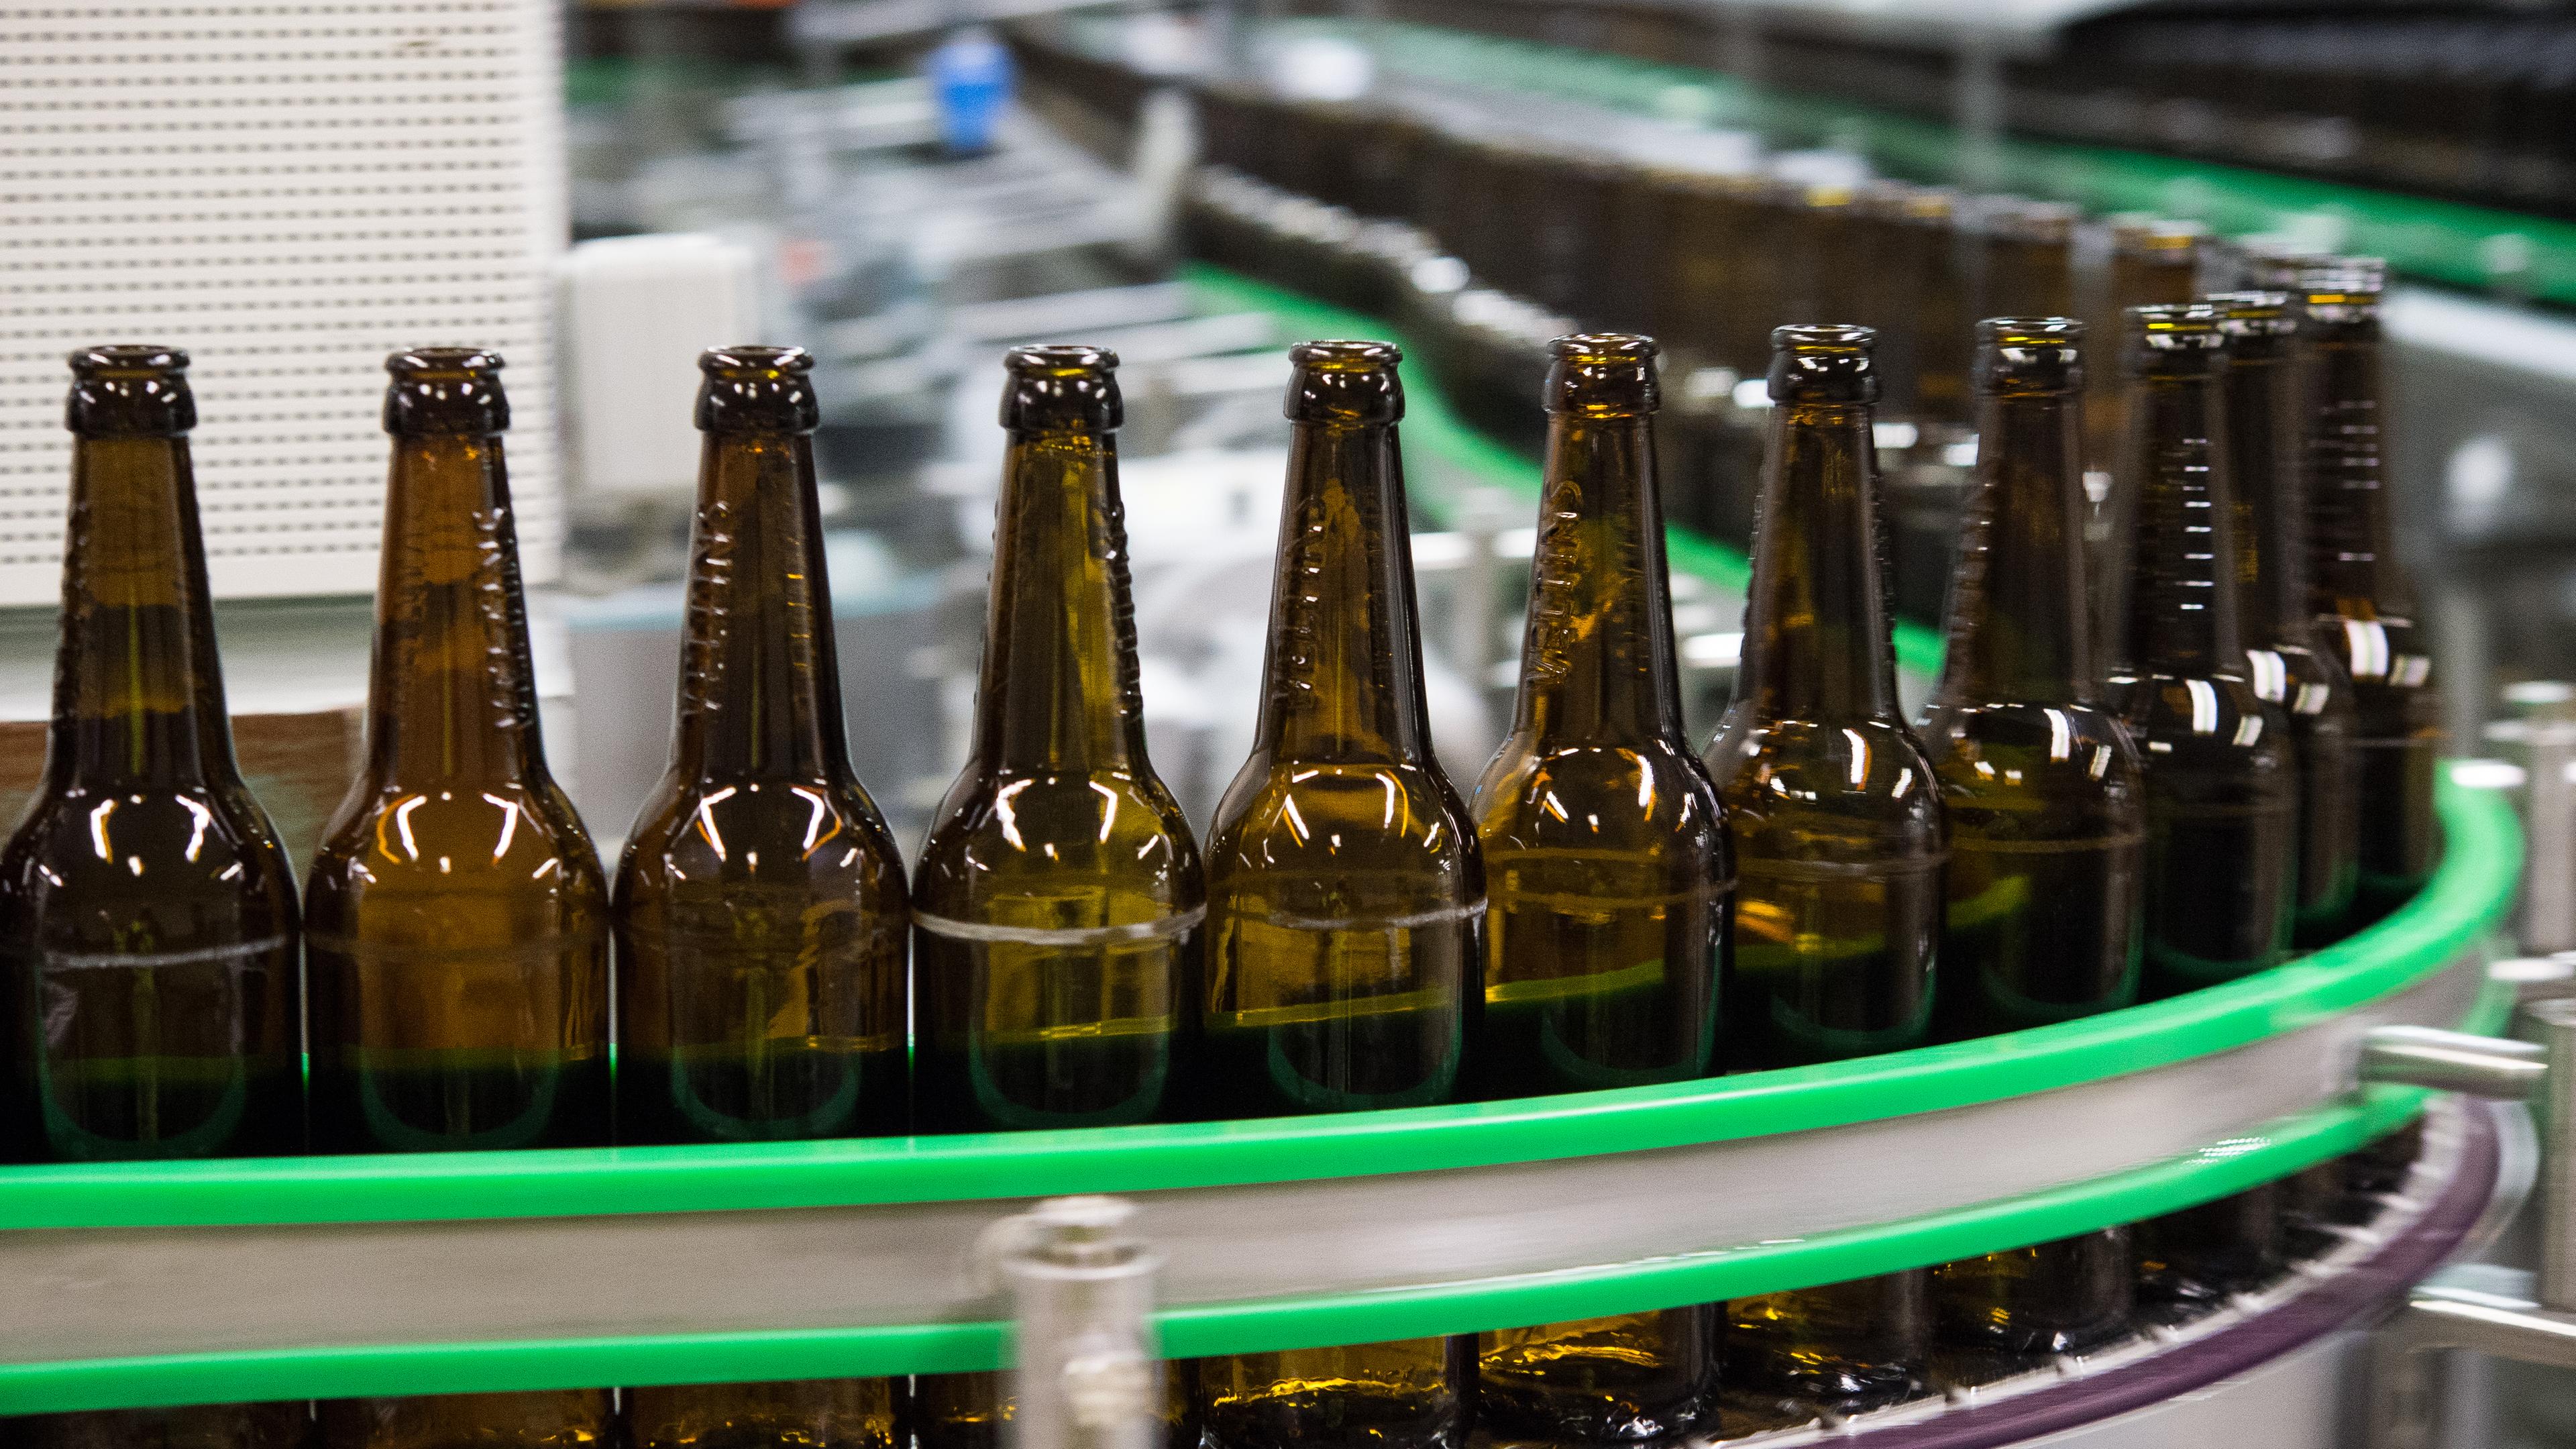 Gewaschene bierflaschen laufen durch die Produktion einer Brauerei.